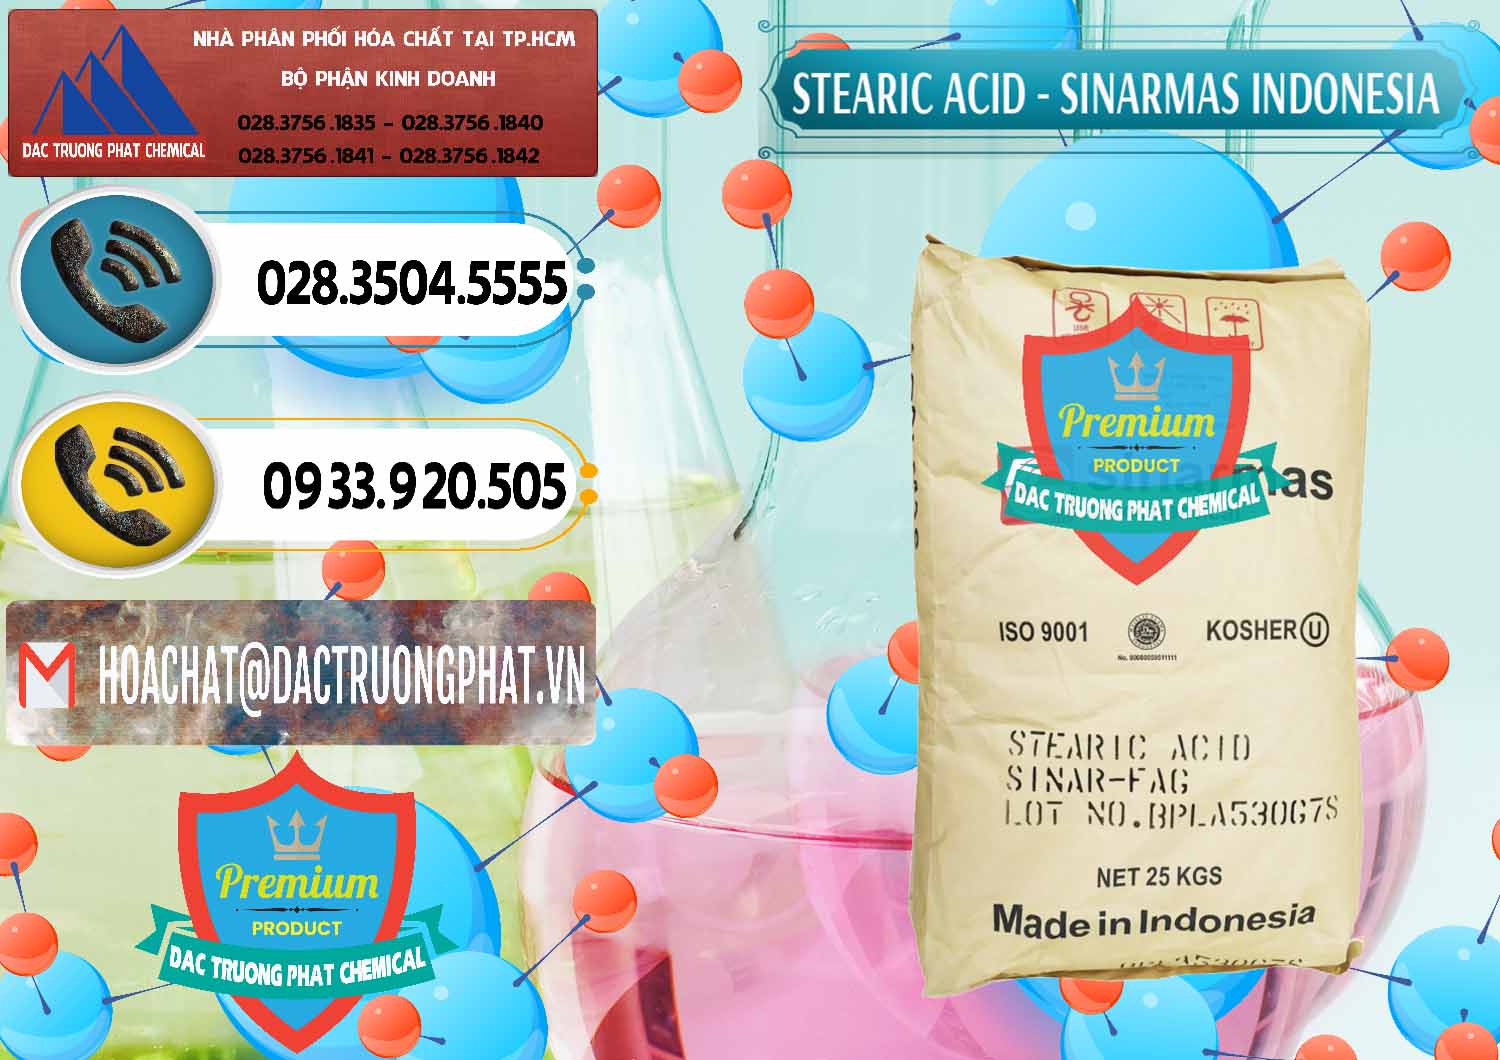 Nơi chuyên bán - cung cấp Axit Stearic - Stearic Acid Sinarmas Indonesia - 0389 - Đơn vị cung cấp & nhập khẩu hóa chất tại TP.HCM - hoachatdetnhuom.vn